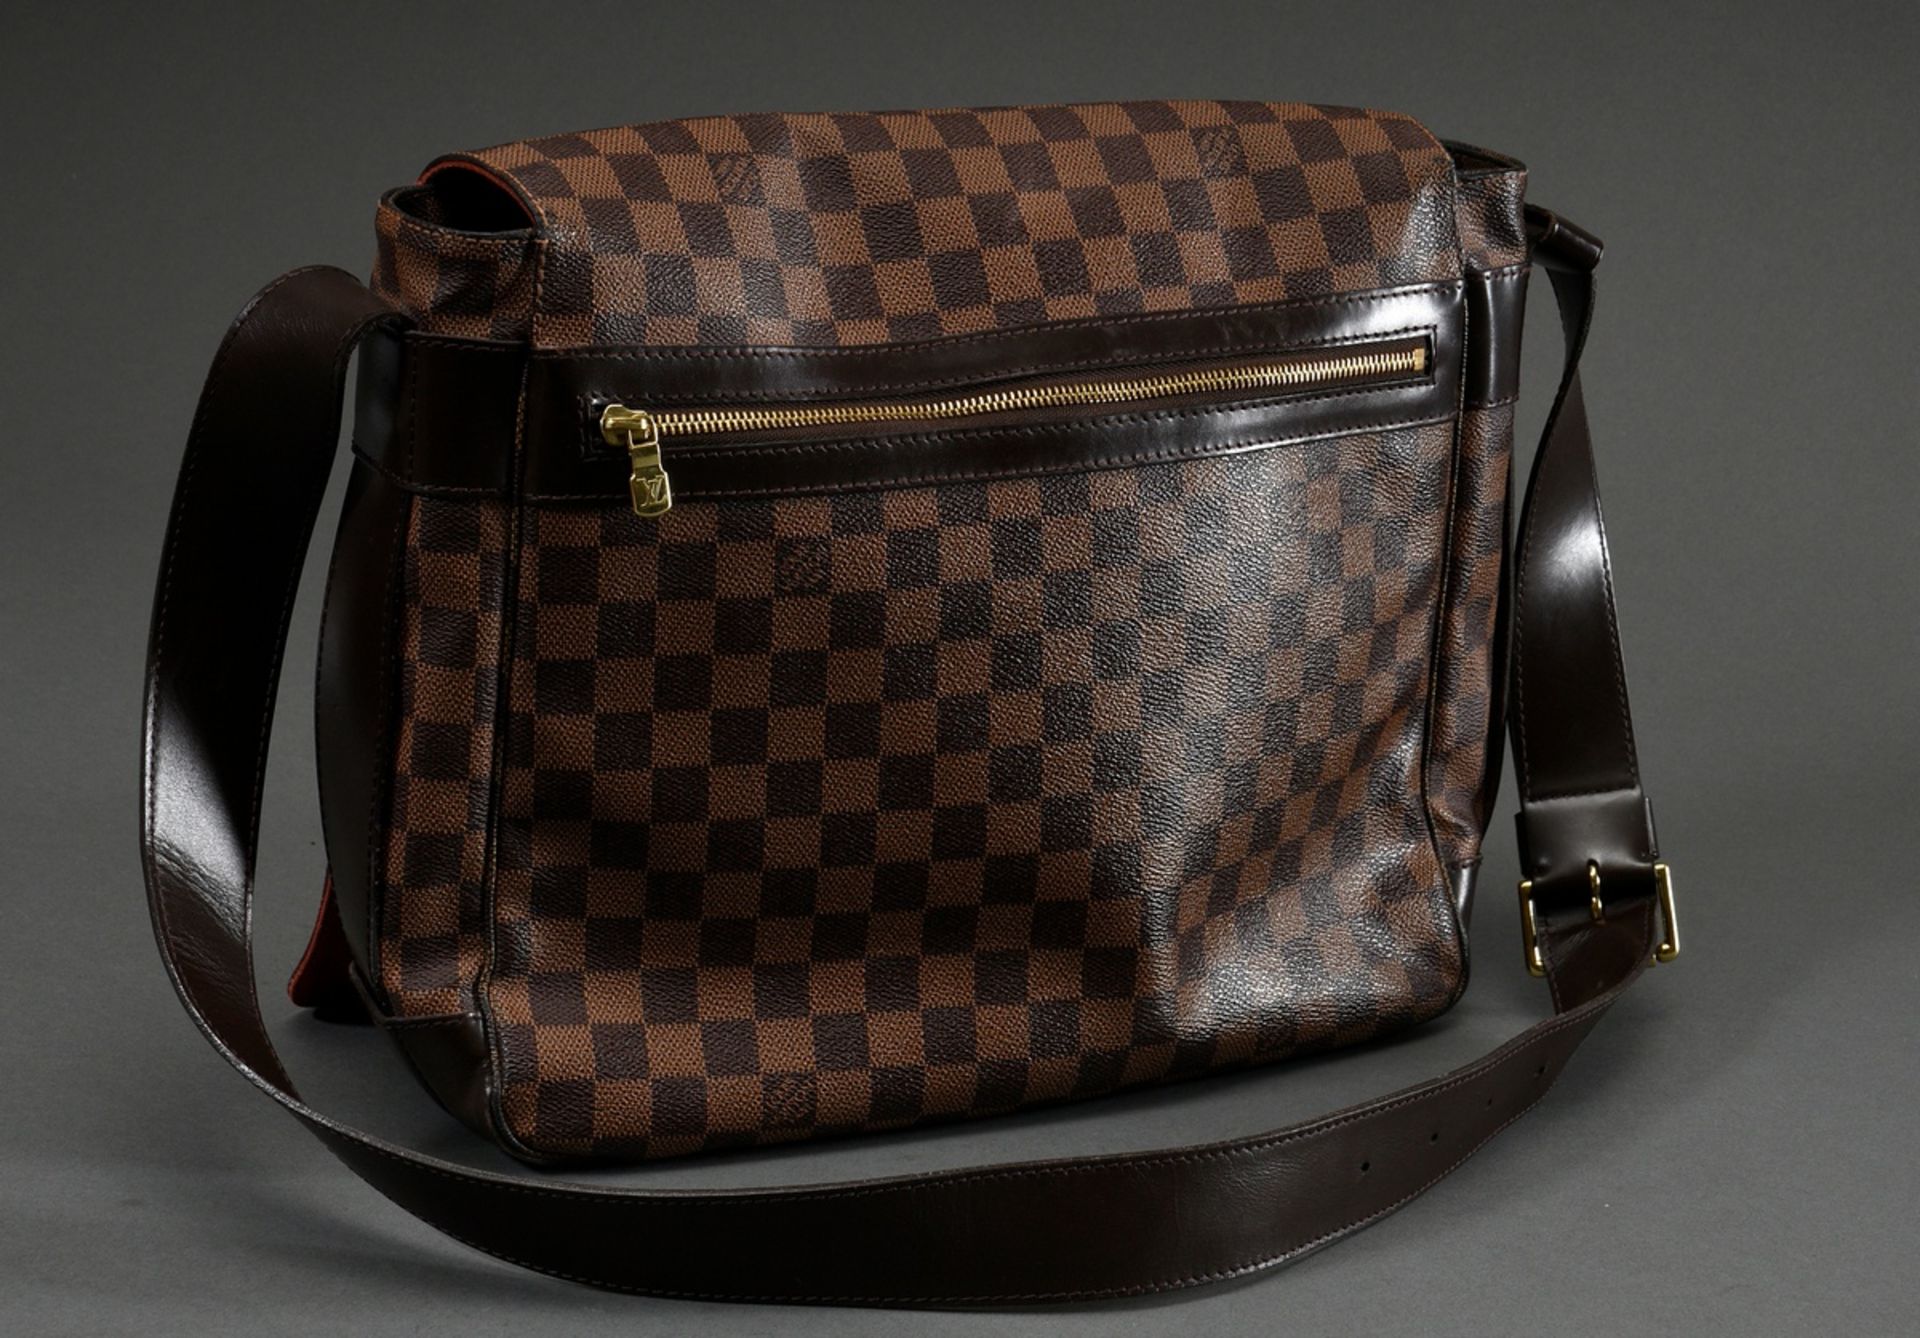 Louis Vuitton vintage "Bastille" messenger bag in damier level canvas with dark brown adjustable le - Image 2 of 8